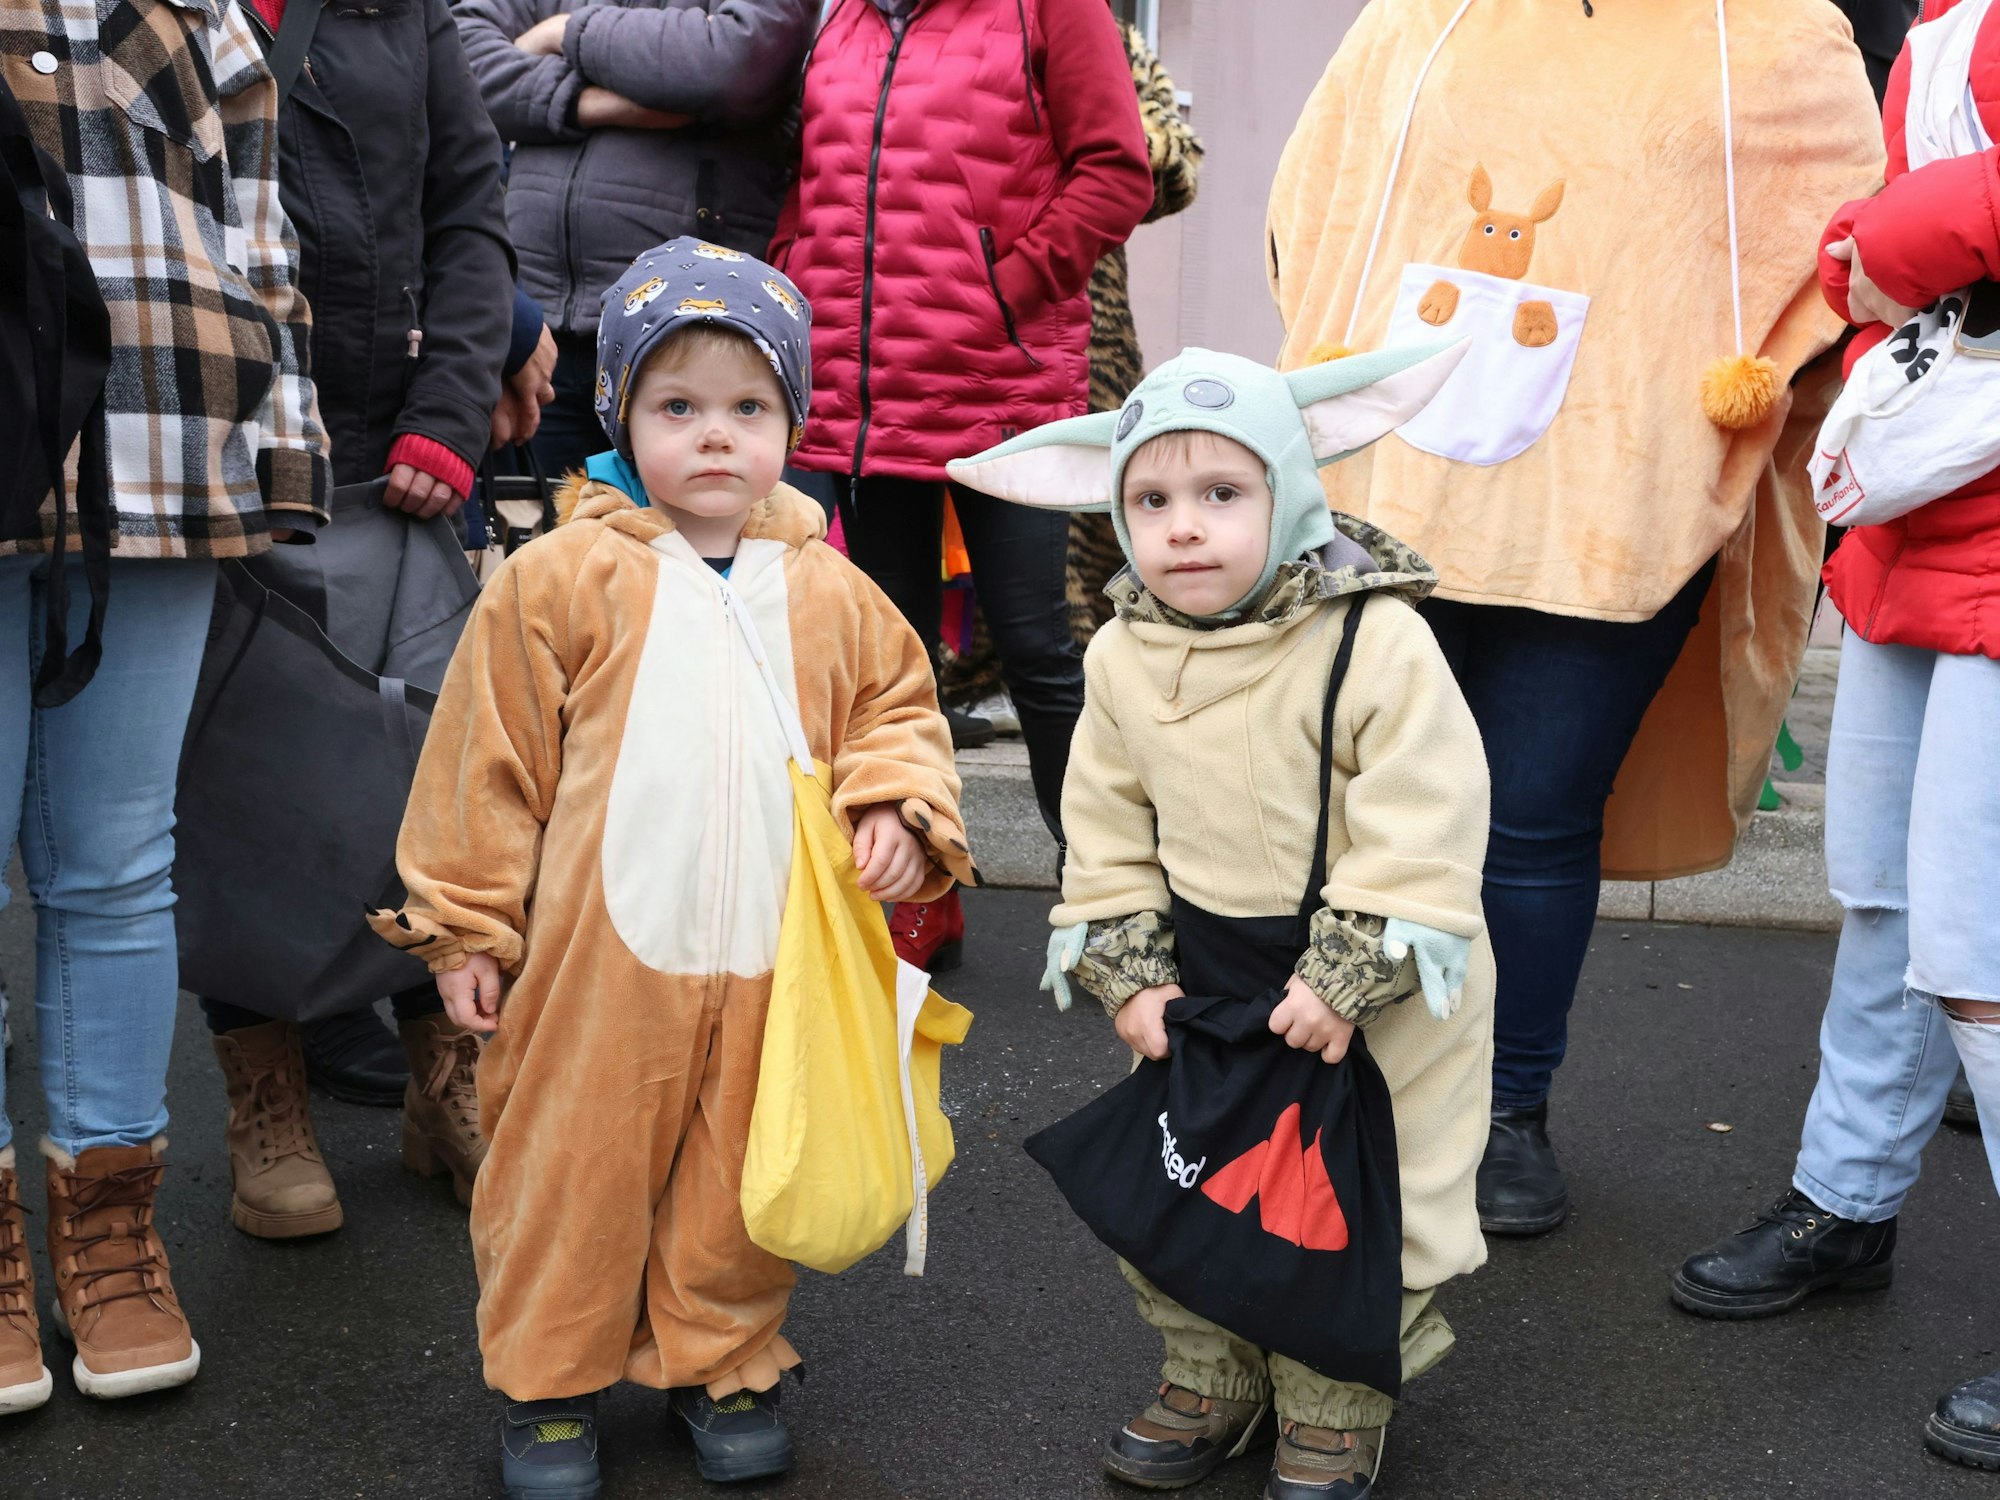 Zwei kleine Kinder in Kostümen stehen mit Beuteln am Rand eines Karnevalsumzuges.